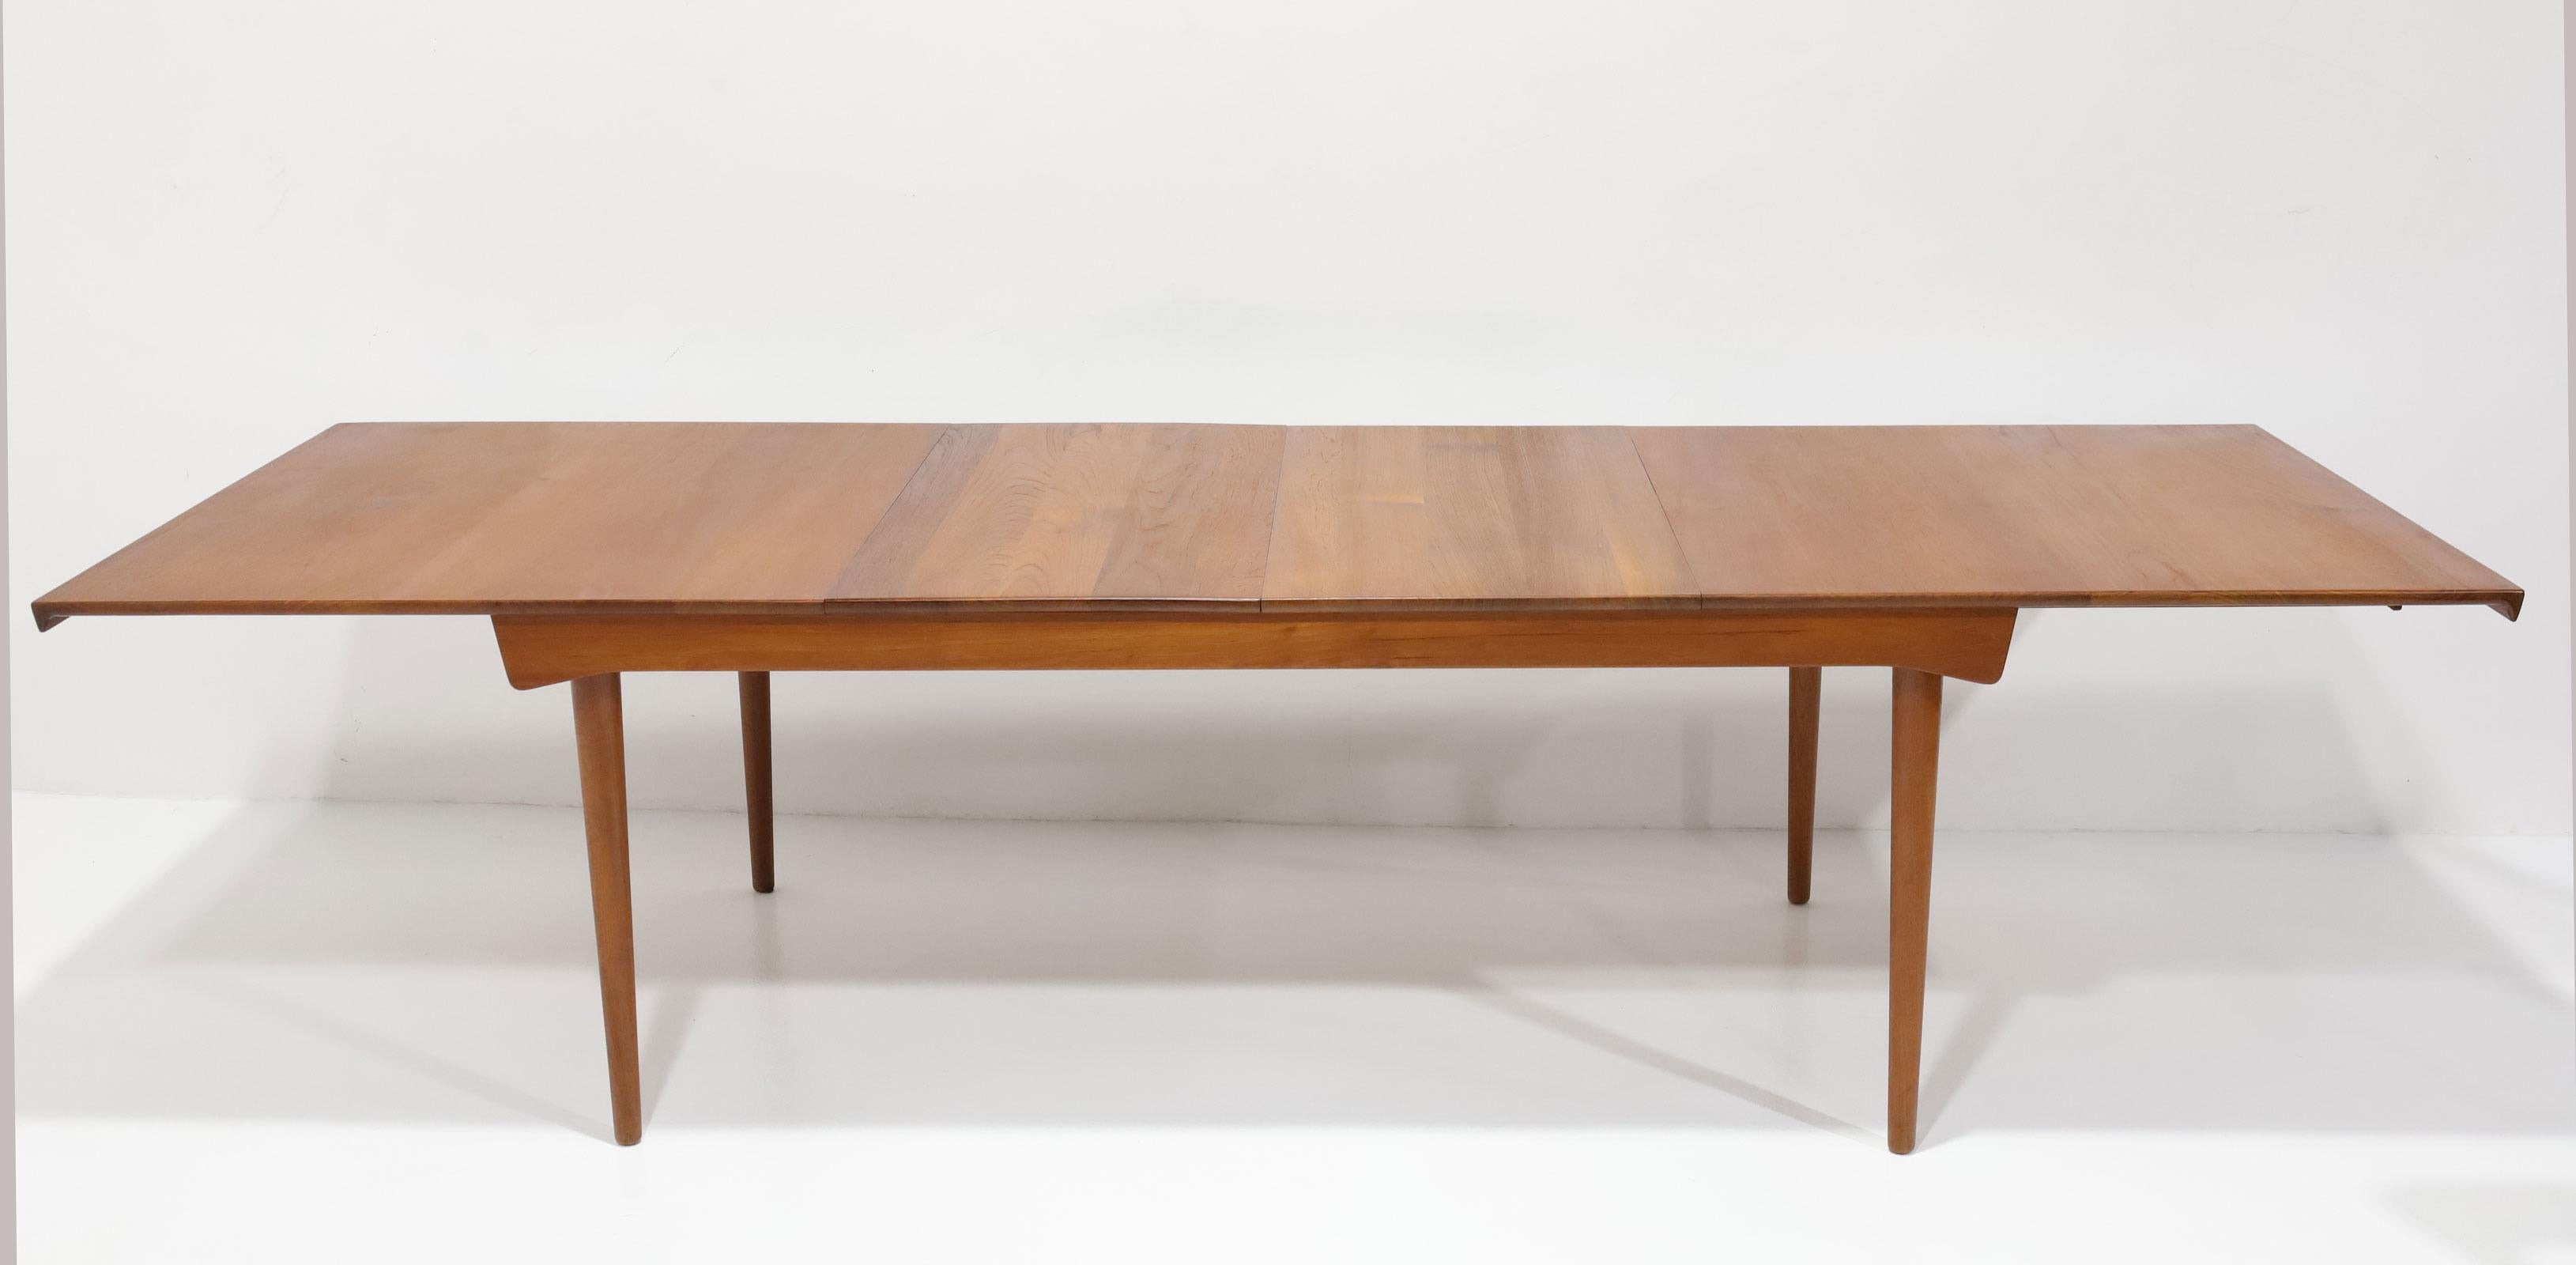 Schöner Finn Juhls Teak Esstisch Modell FD 540. Dieser Tisch wurde von France & Son in Dänemark hergestellt und von Povl Dinesen vertrieben. 1950s. Dieser Tisch hat zwei Verlängerungsplatten unterhalb des Tisches. Jedes Blatt ist 19,75